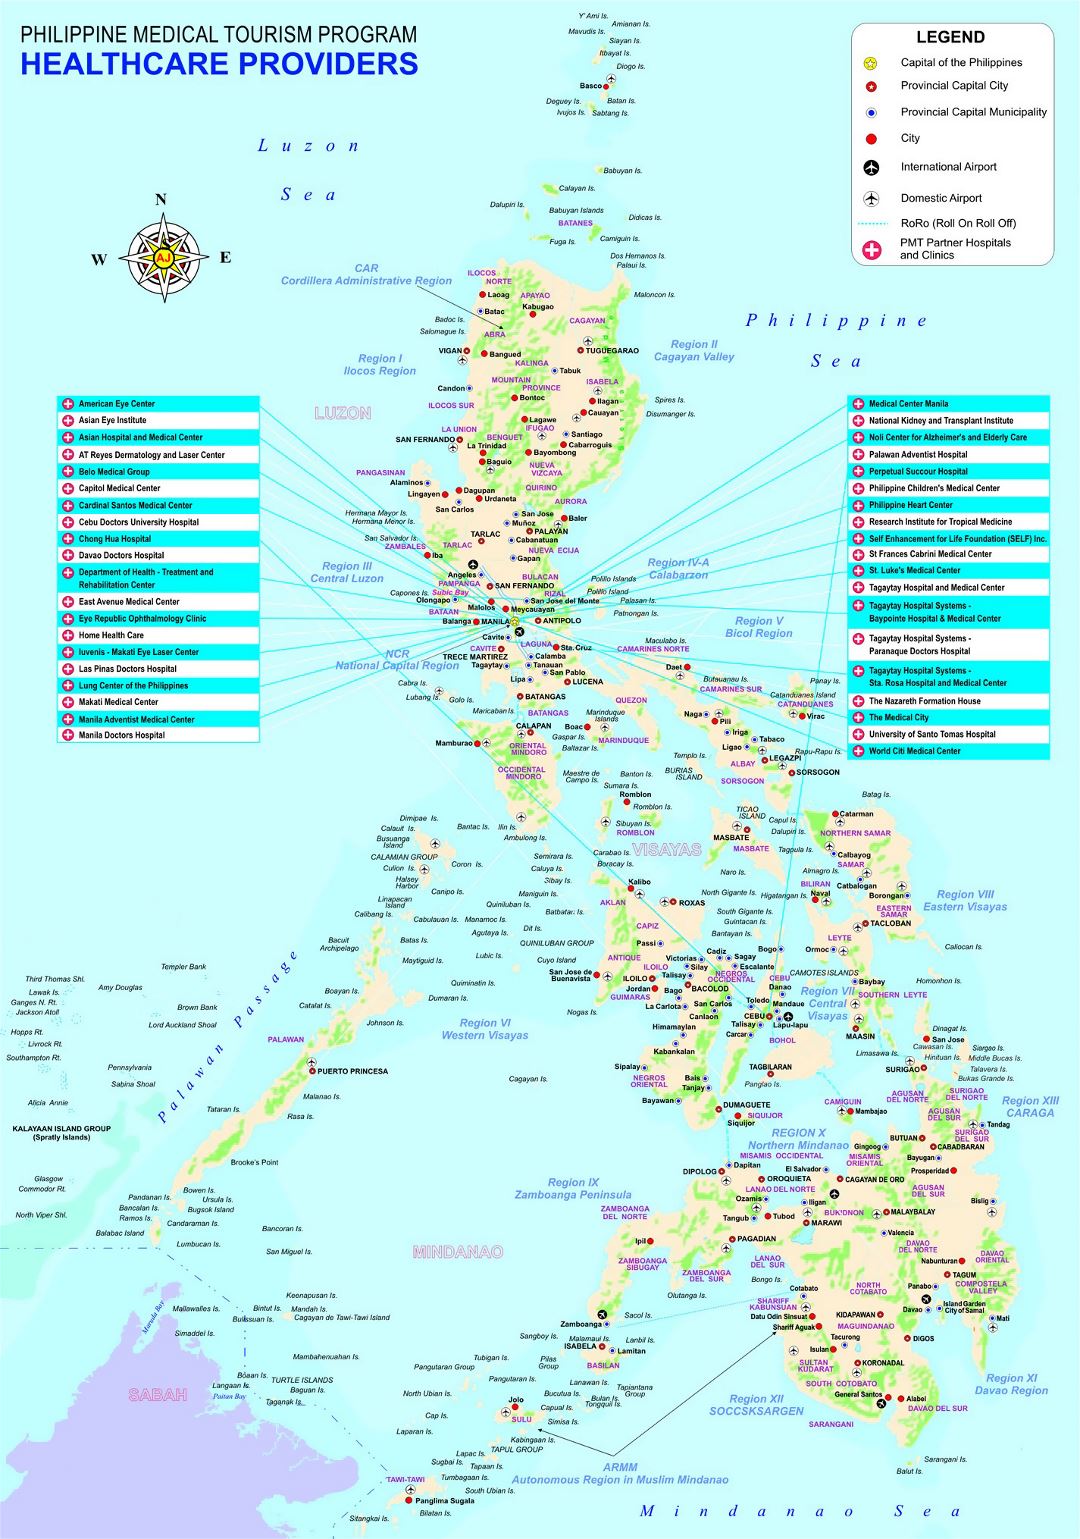 Grande detallado mapa del Programa de Turismo Médico de Filipinas con otras marcas